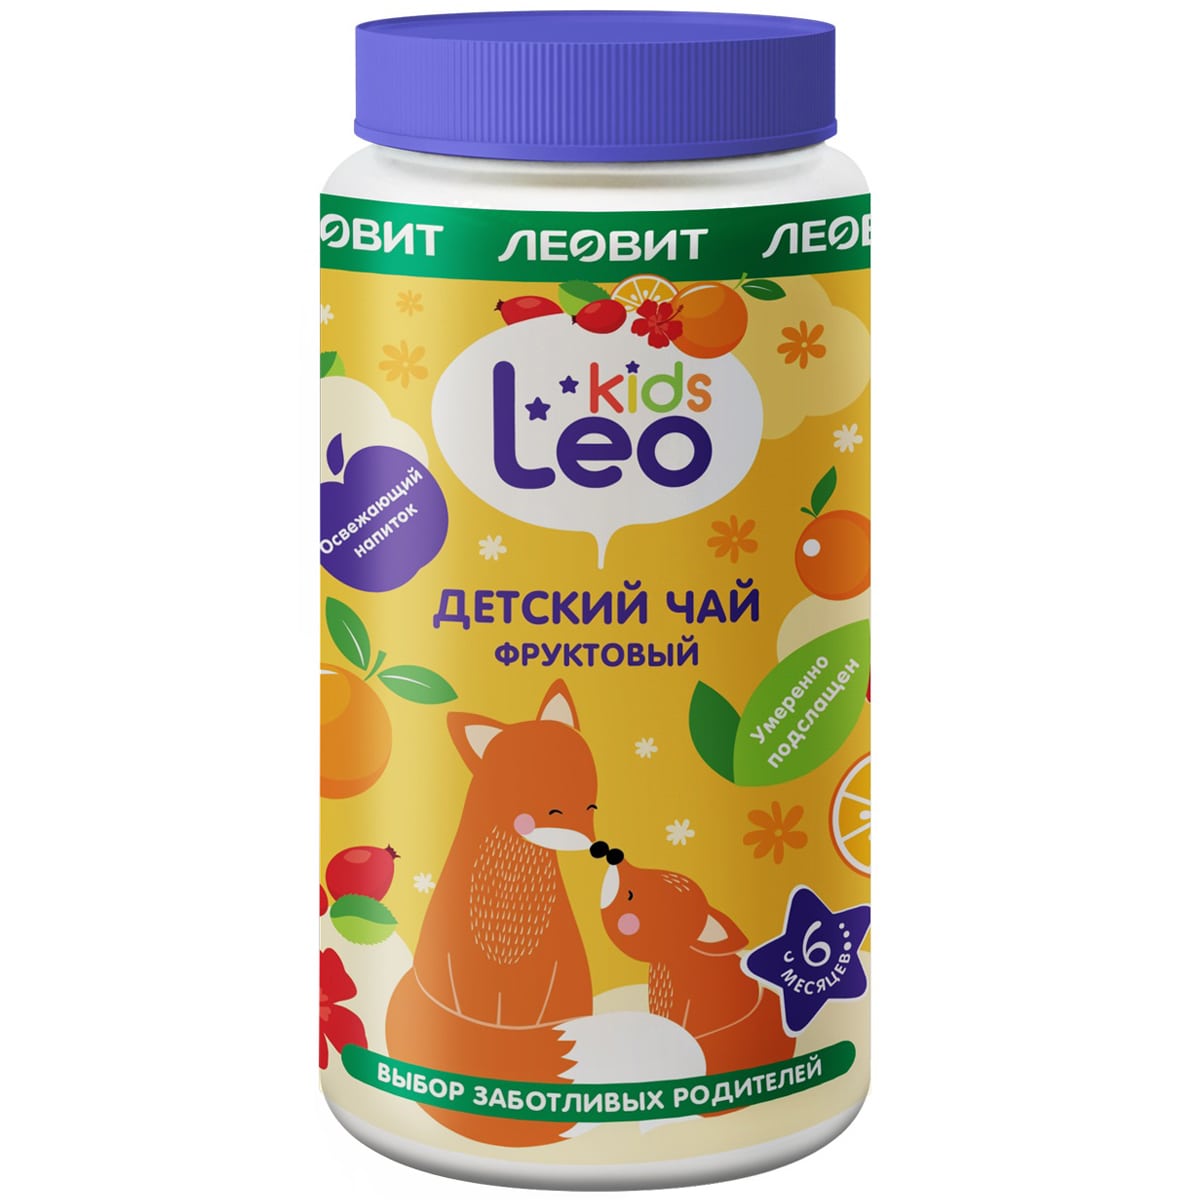 Леовит Детский гранулированный фруктовый чай 6 мес+, 200 г (Леовит, Leo Kids)